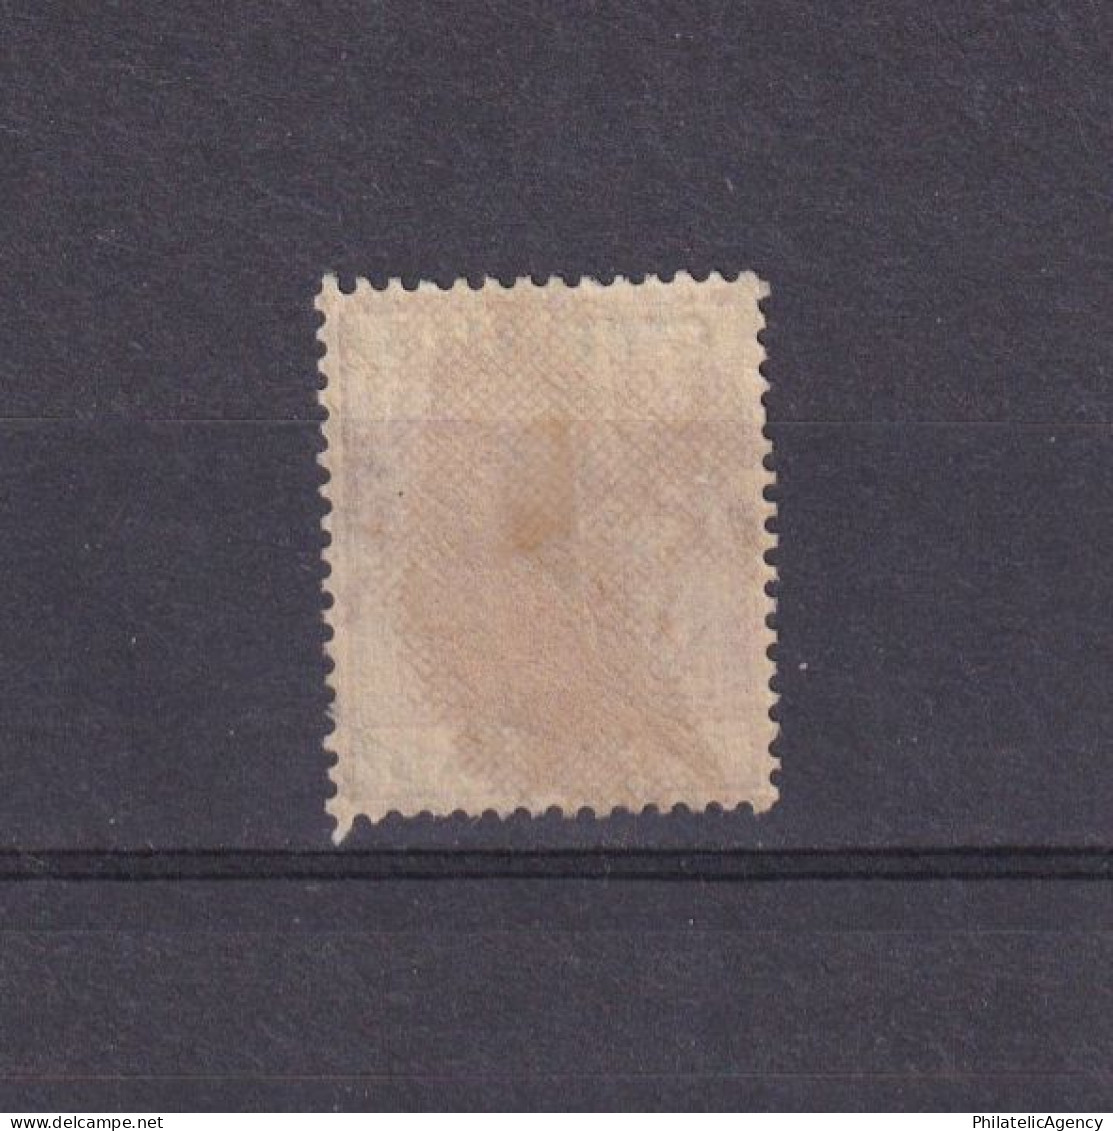 CYPRUS 1912, SG# 75, Wmk Mult Crown CA, King George V, Used - Cyprus (...-1960)